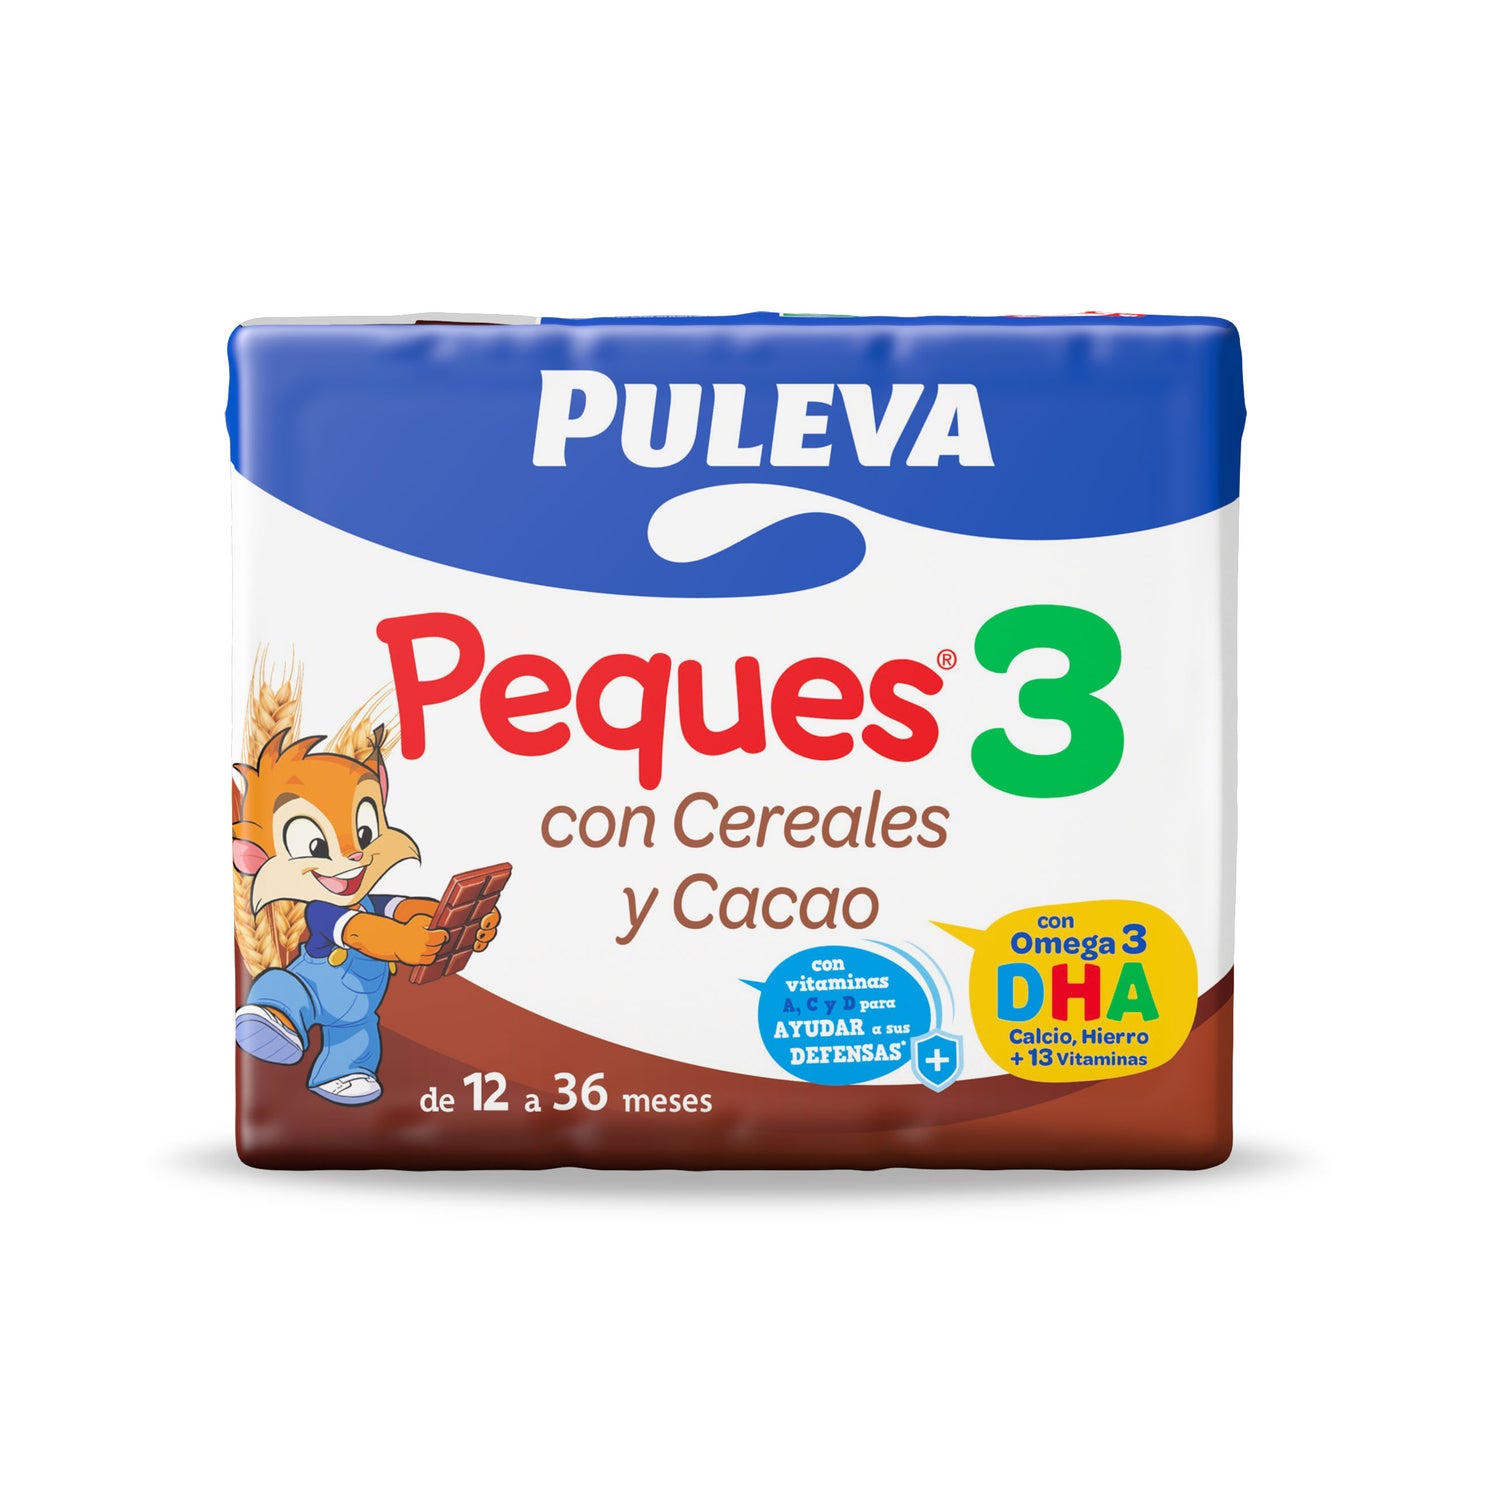 Puleva Peques 3, Puleva Max y Batidos Puleva, Productos del año 2013